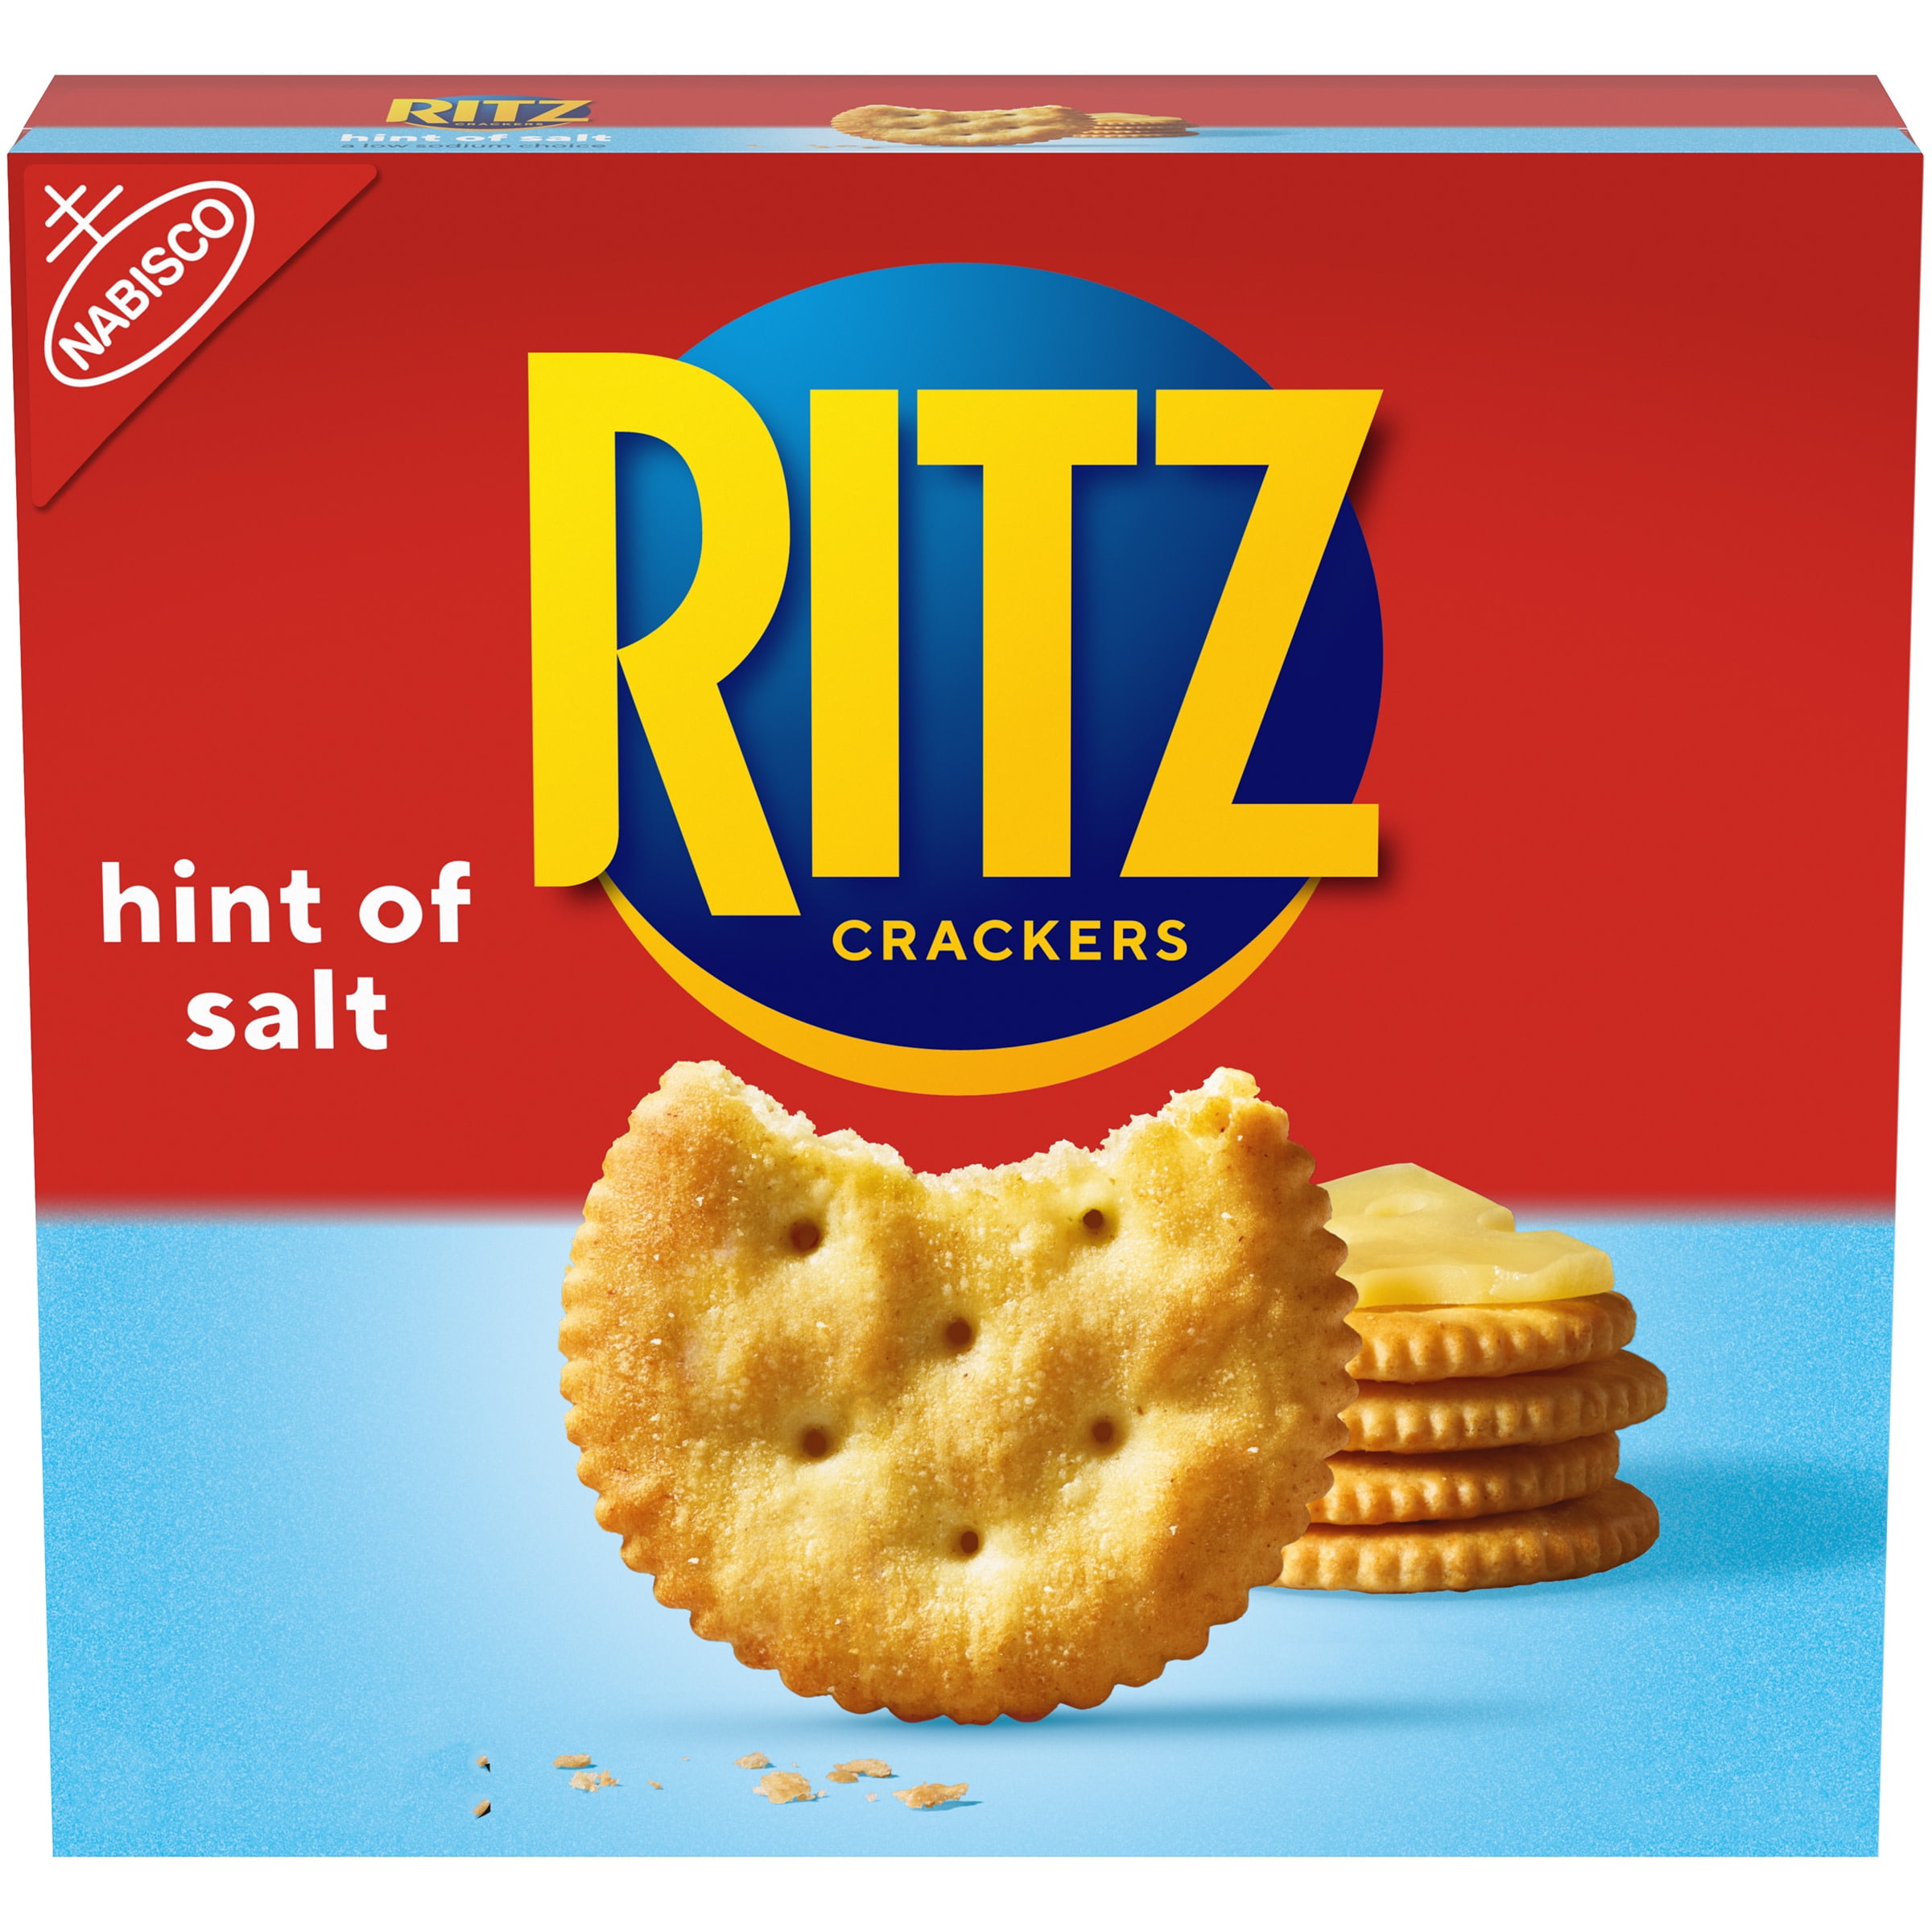 Ritz Hint of Salt Crackers, 13.7 oz - Walmart.com - Walmart.com